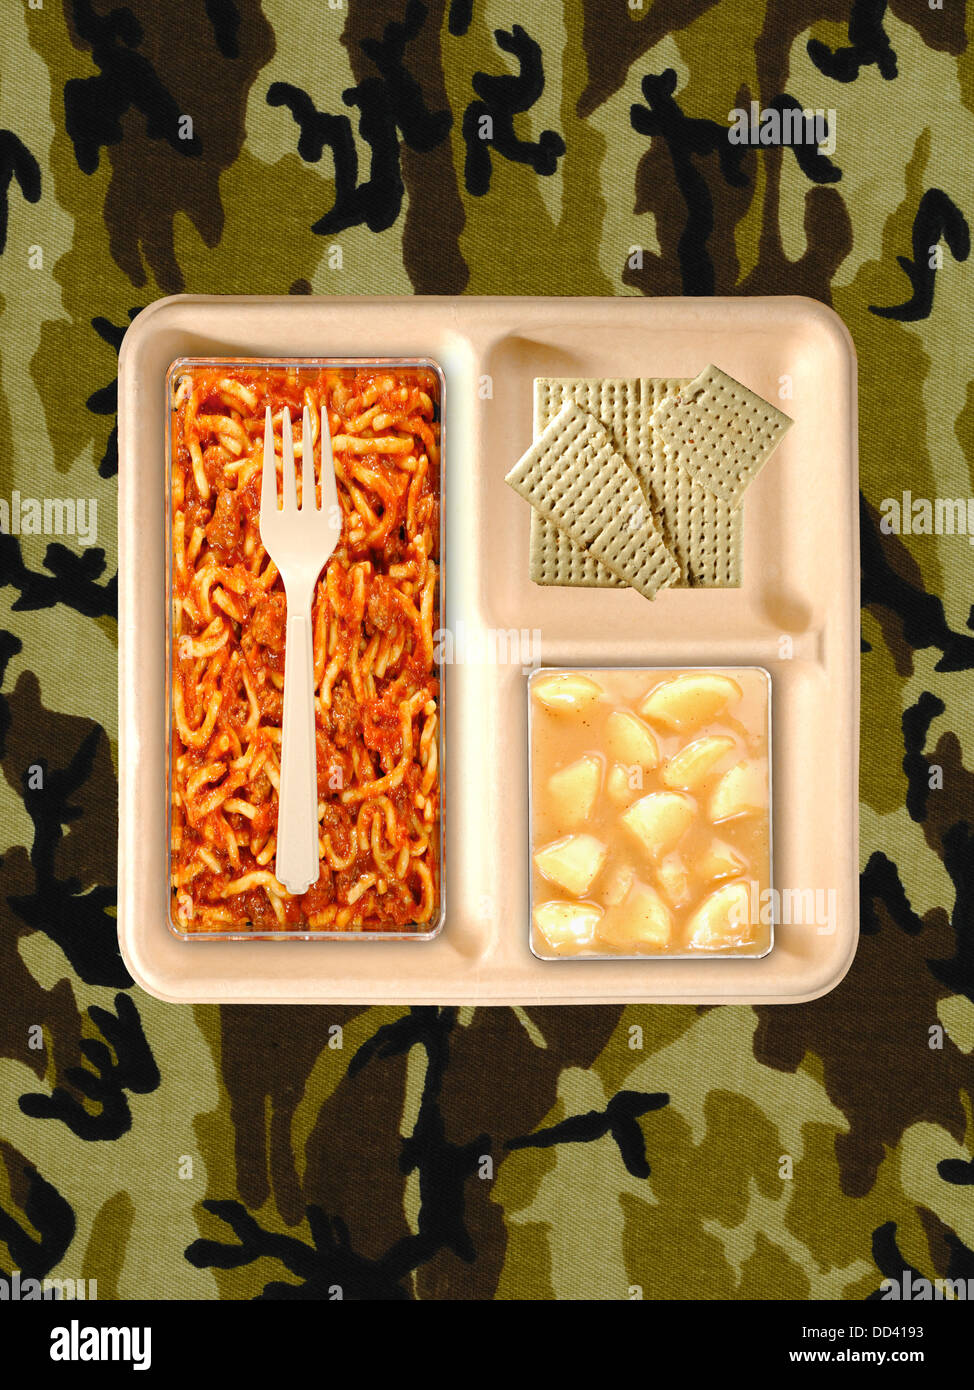 Des rations alimentaires militaires ou MRE repas prêt à manger sur un fond camouflé. Ouvrir les paquets avec des ustensiles en plastique. Banque D'Images